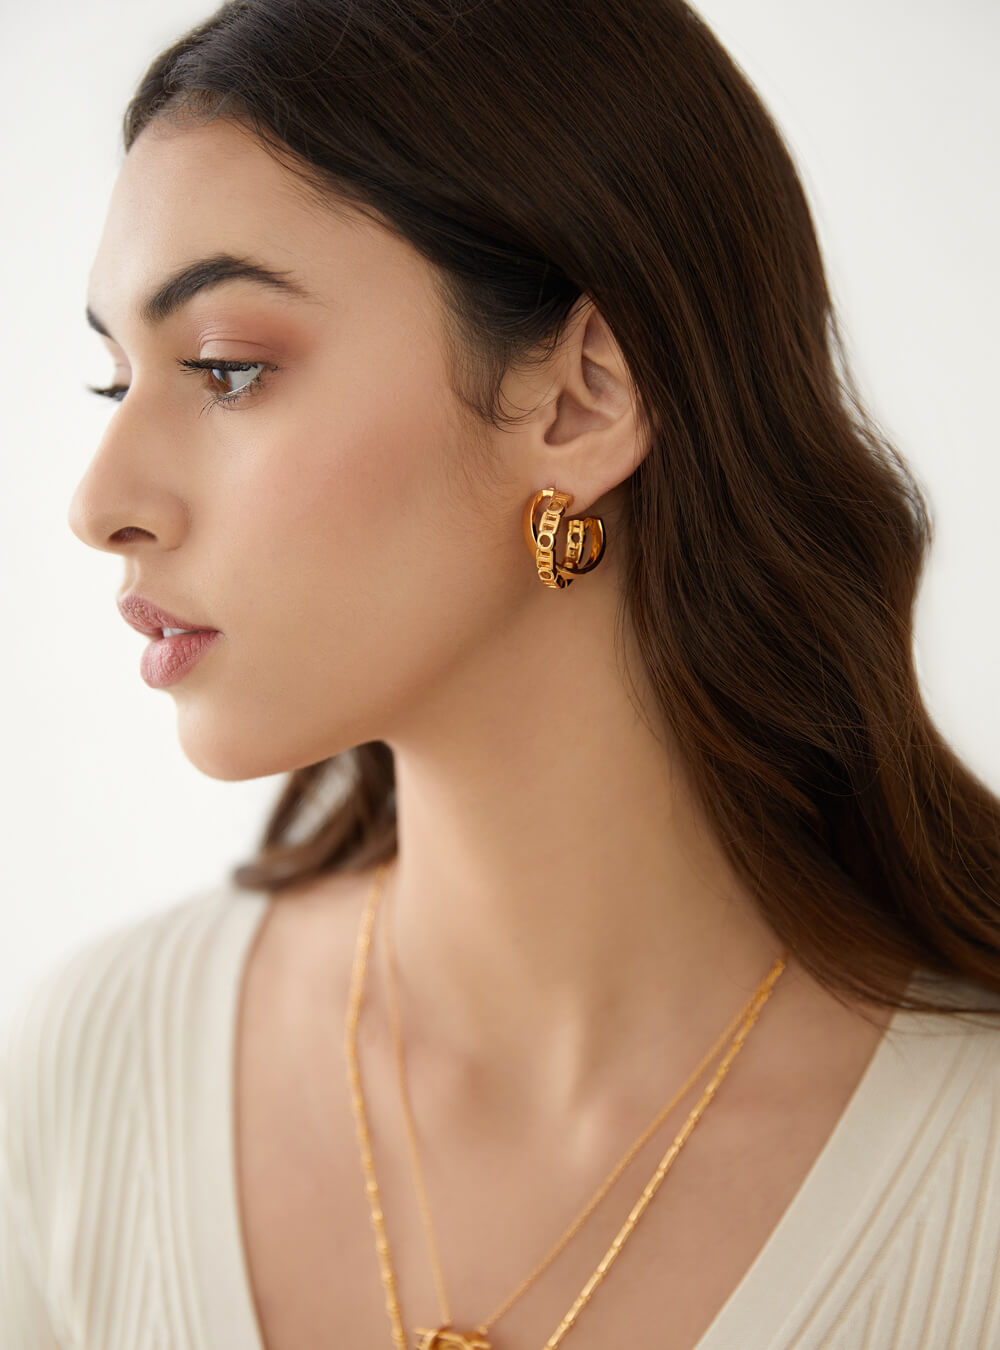 22K Gold Hoop Earrings (Ear Bali) For Women - 235-GER15019 in 4.250 Grams